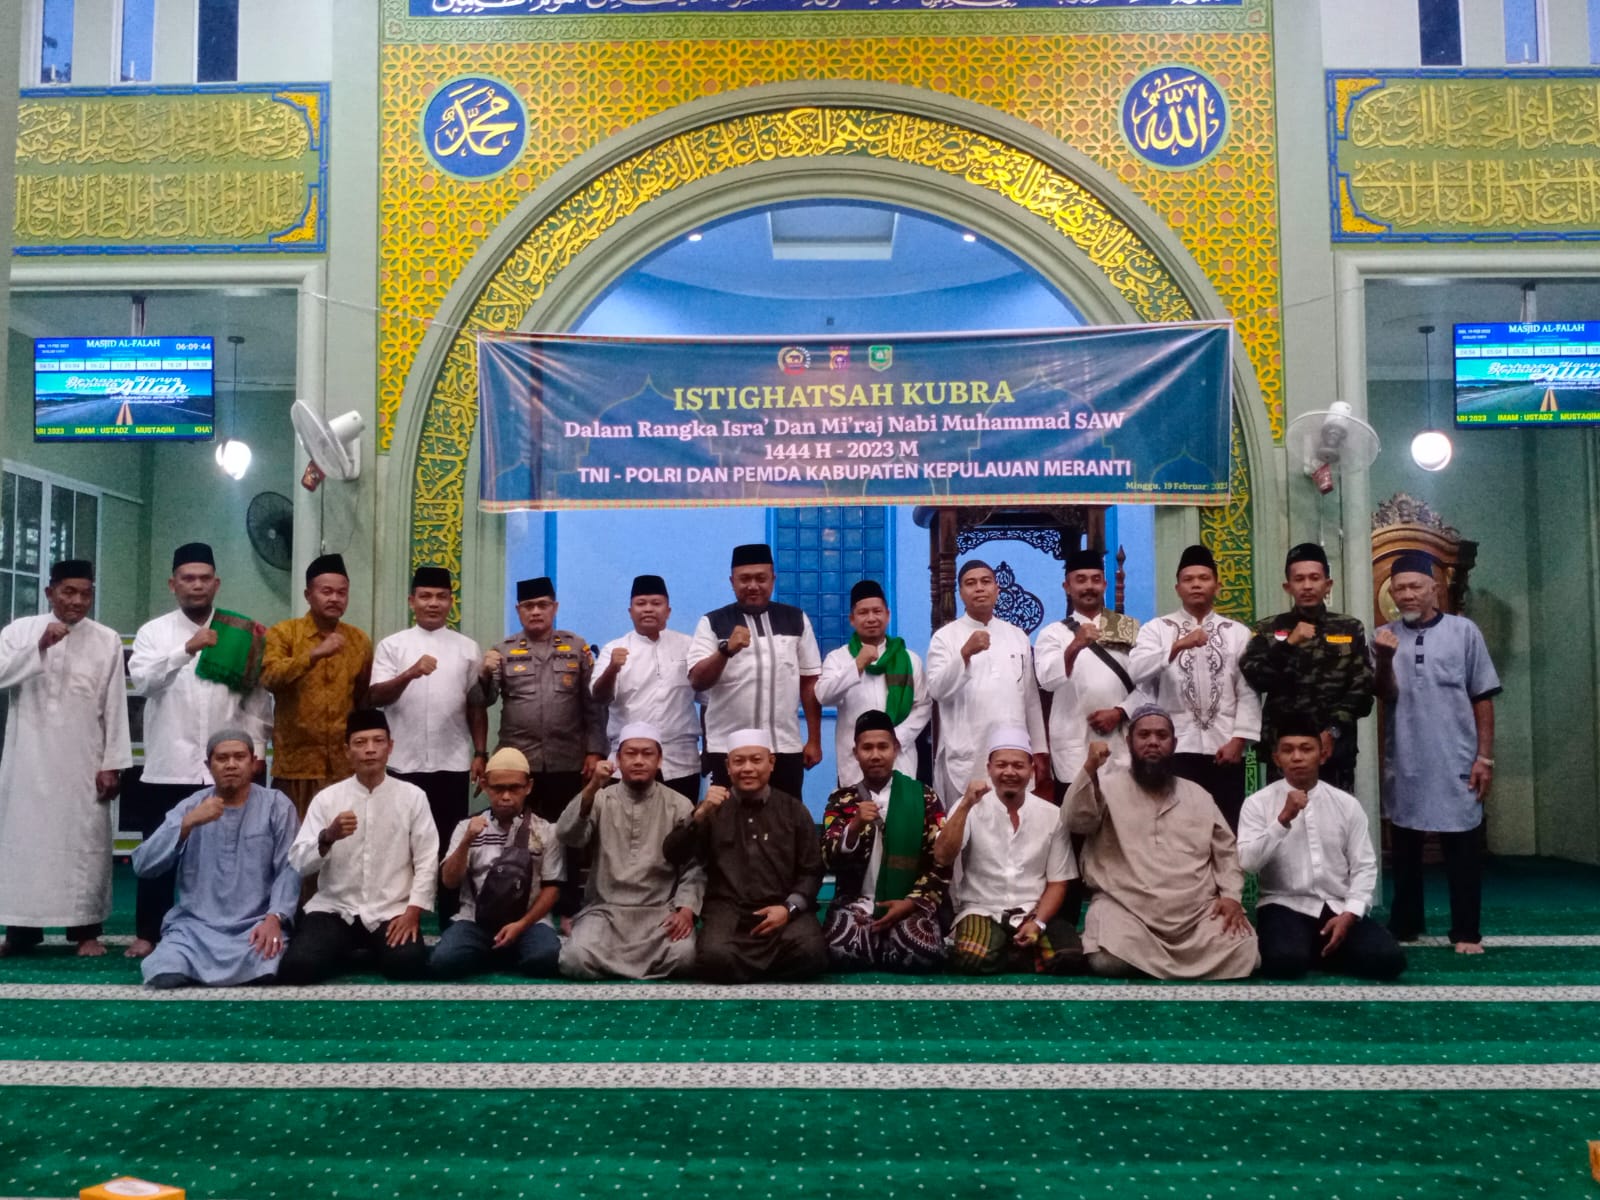 TNI, POLRI dan Pemda Kabupaten Kepulauan Meranti Melaksanakan Istighotsah Kubro Di Masjid Al-Fallah 